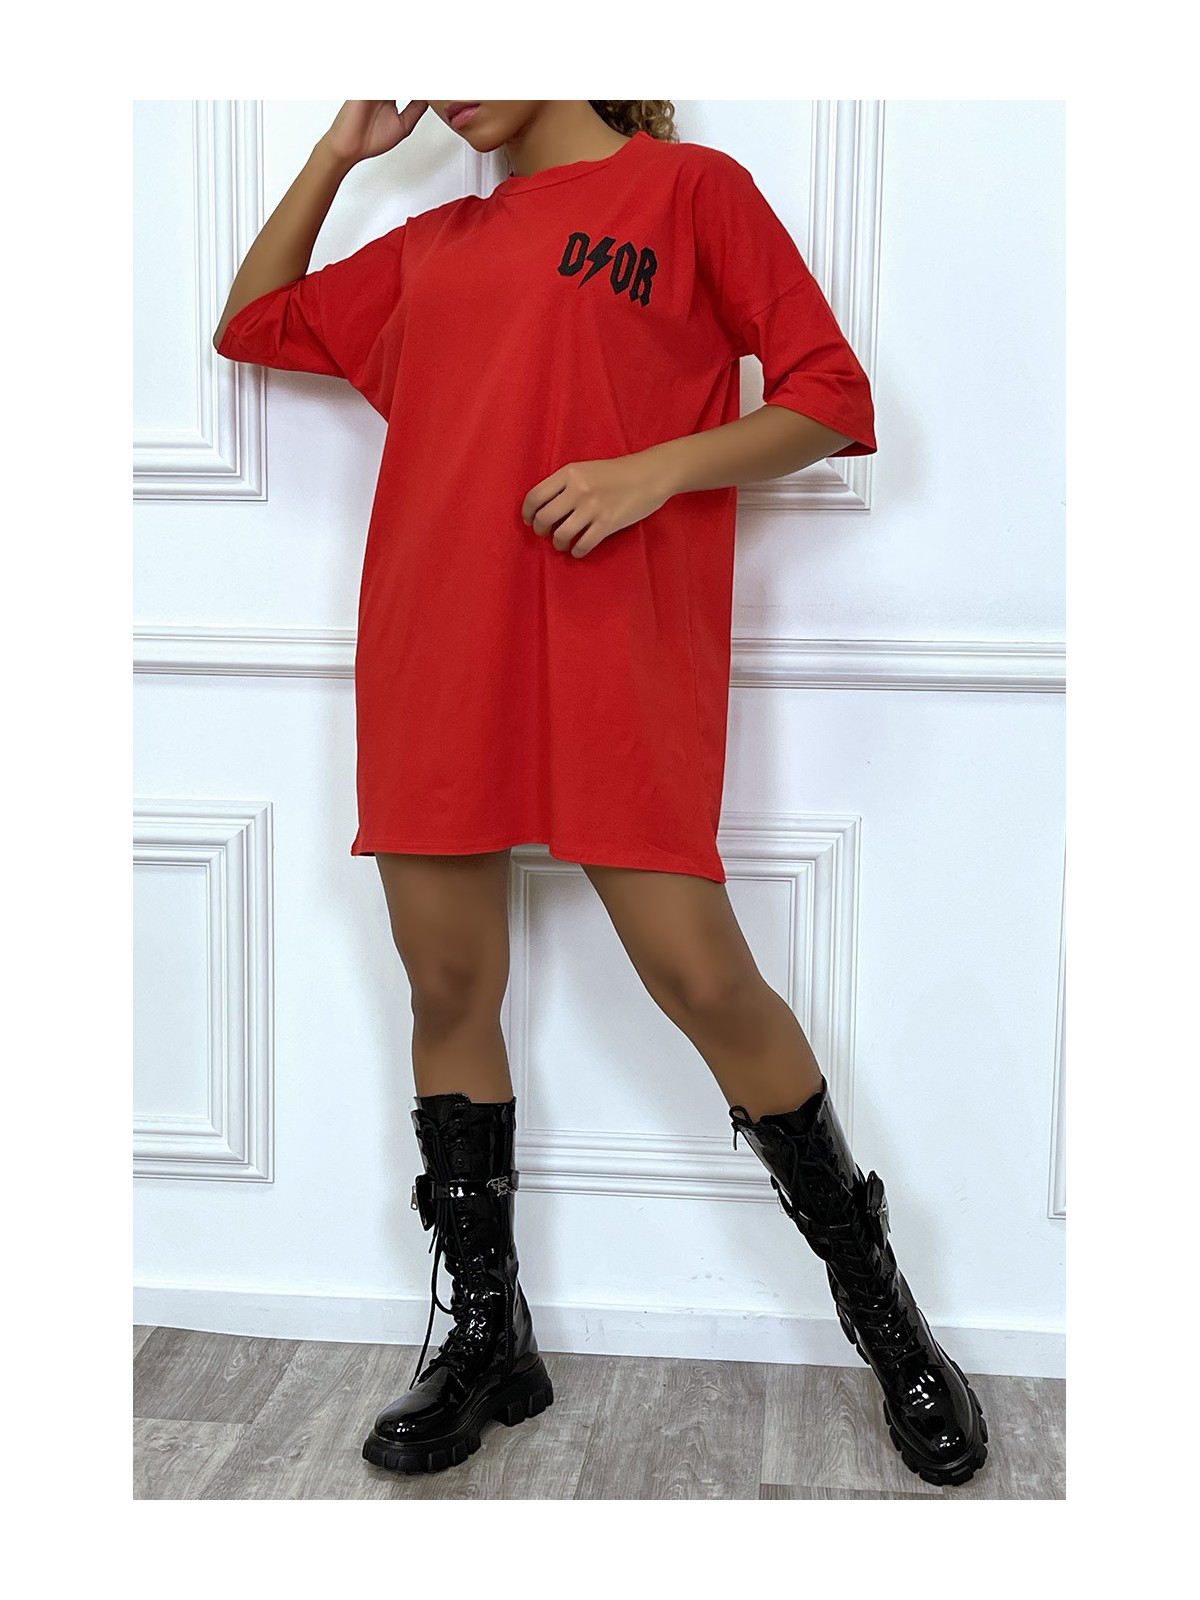 Tee-shirt oversize rouge tendance, écriture "D/or", manche mi-longue - 6